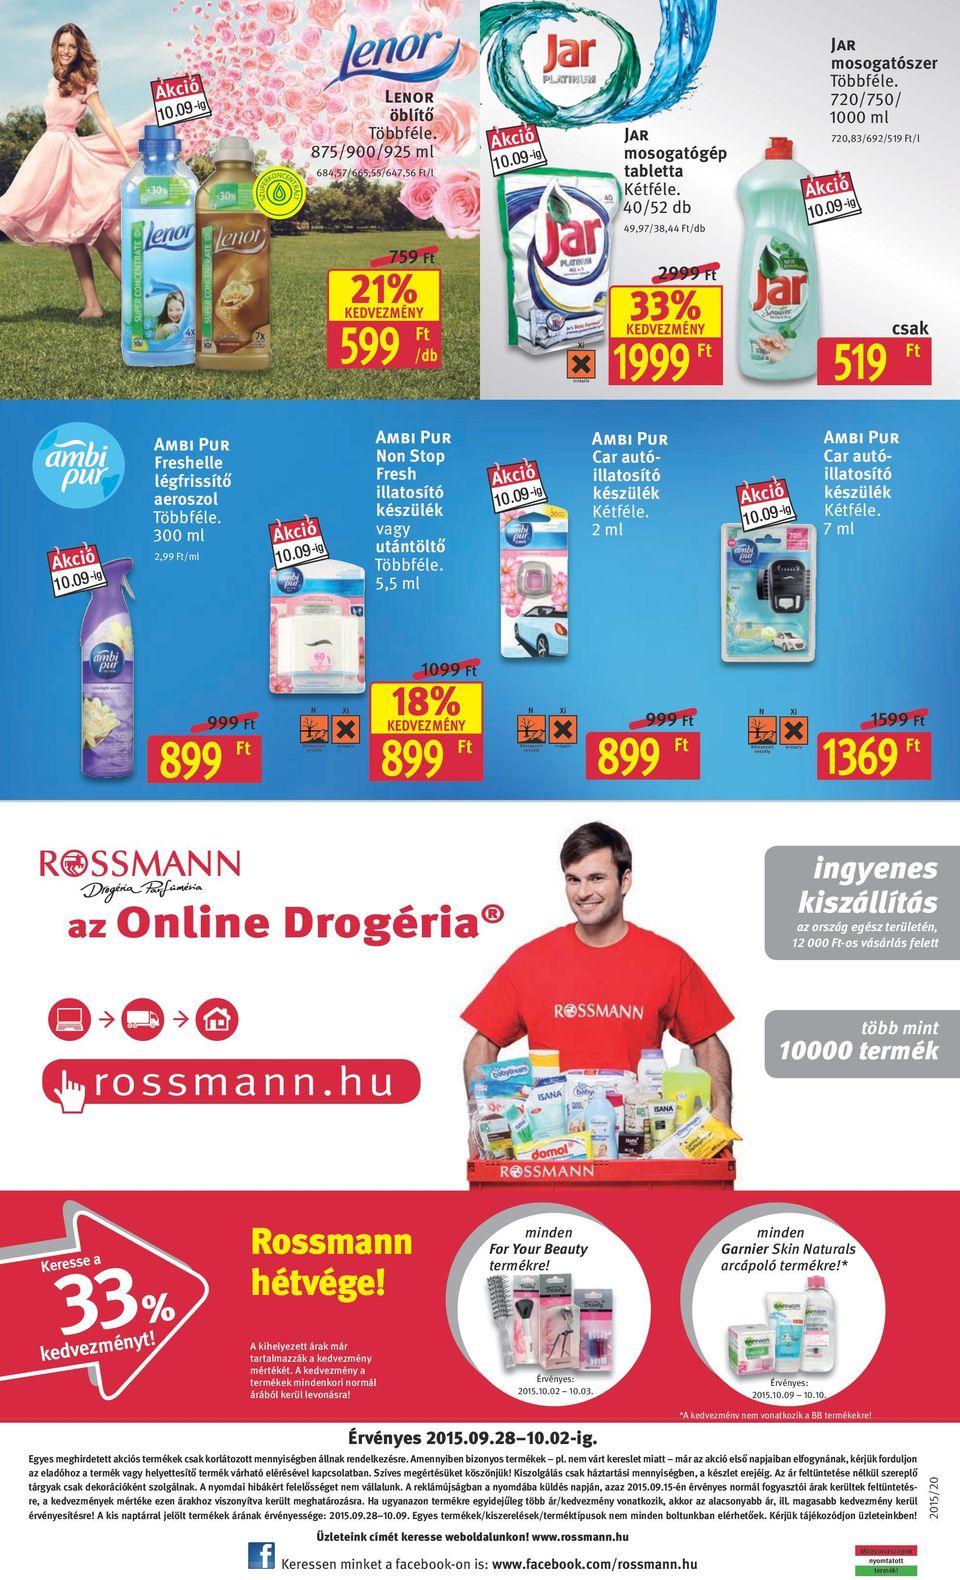 Online Drogéria ingyenes kiszállítás az ország egész területén, 12 000 -os vásárlás felett rossmann.hu több mint 10000 termék Keresse a kedvezményt! Rossmann hétvége!